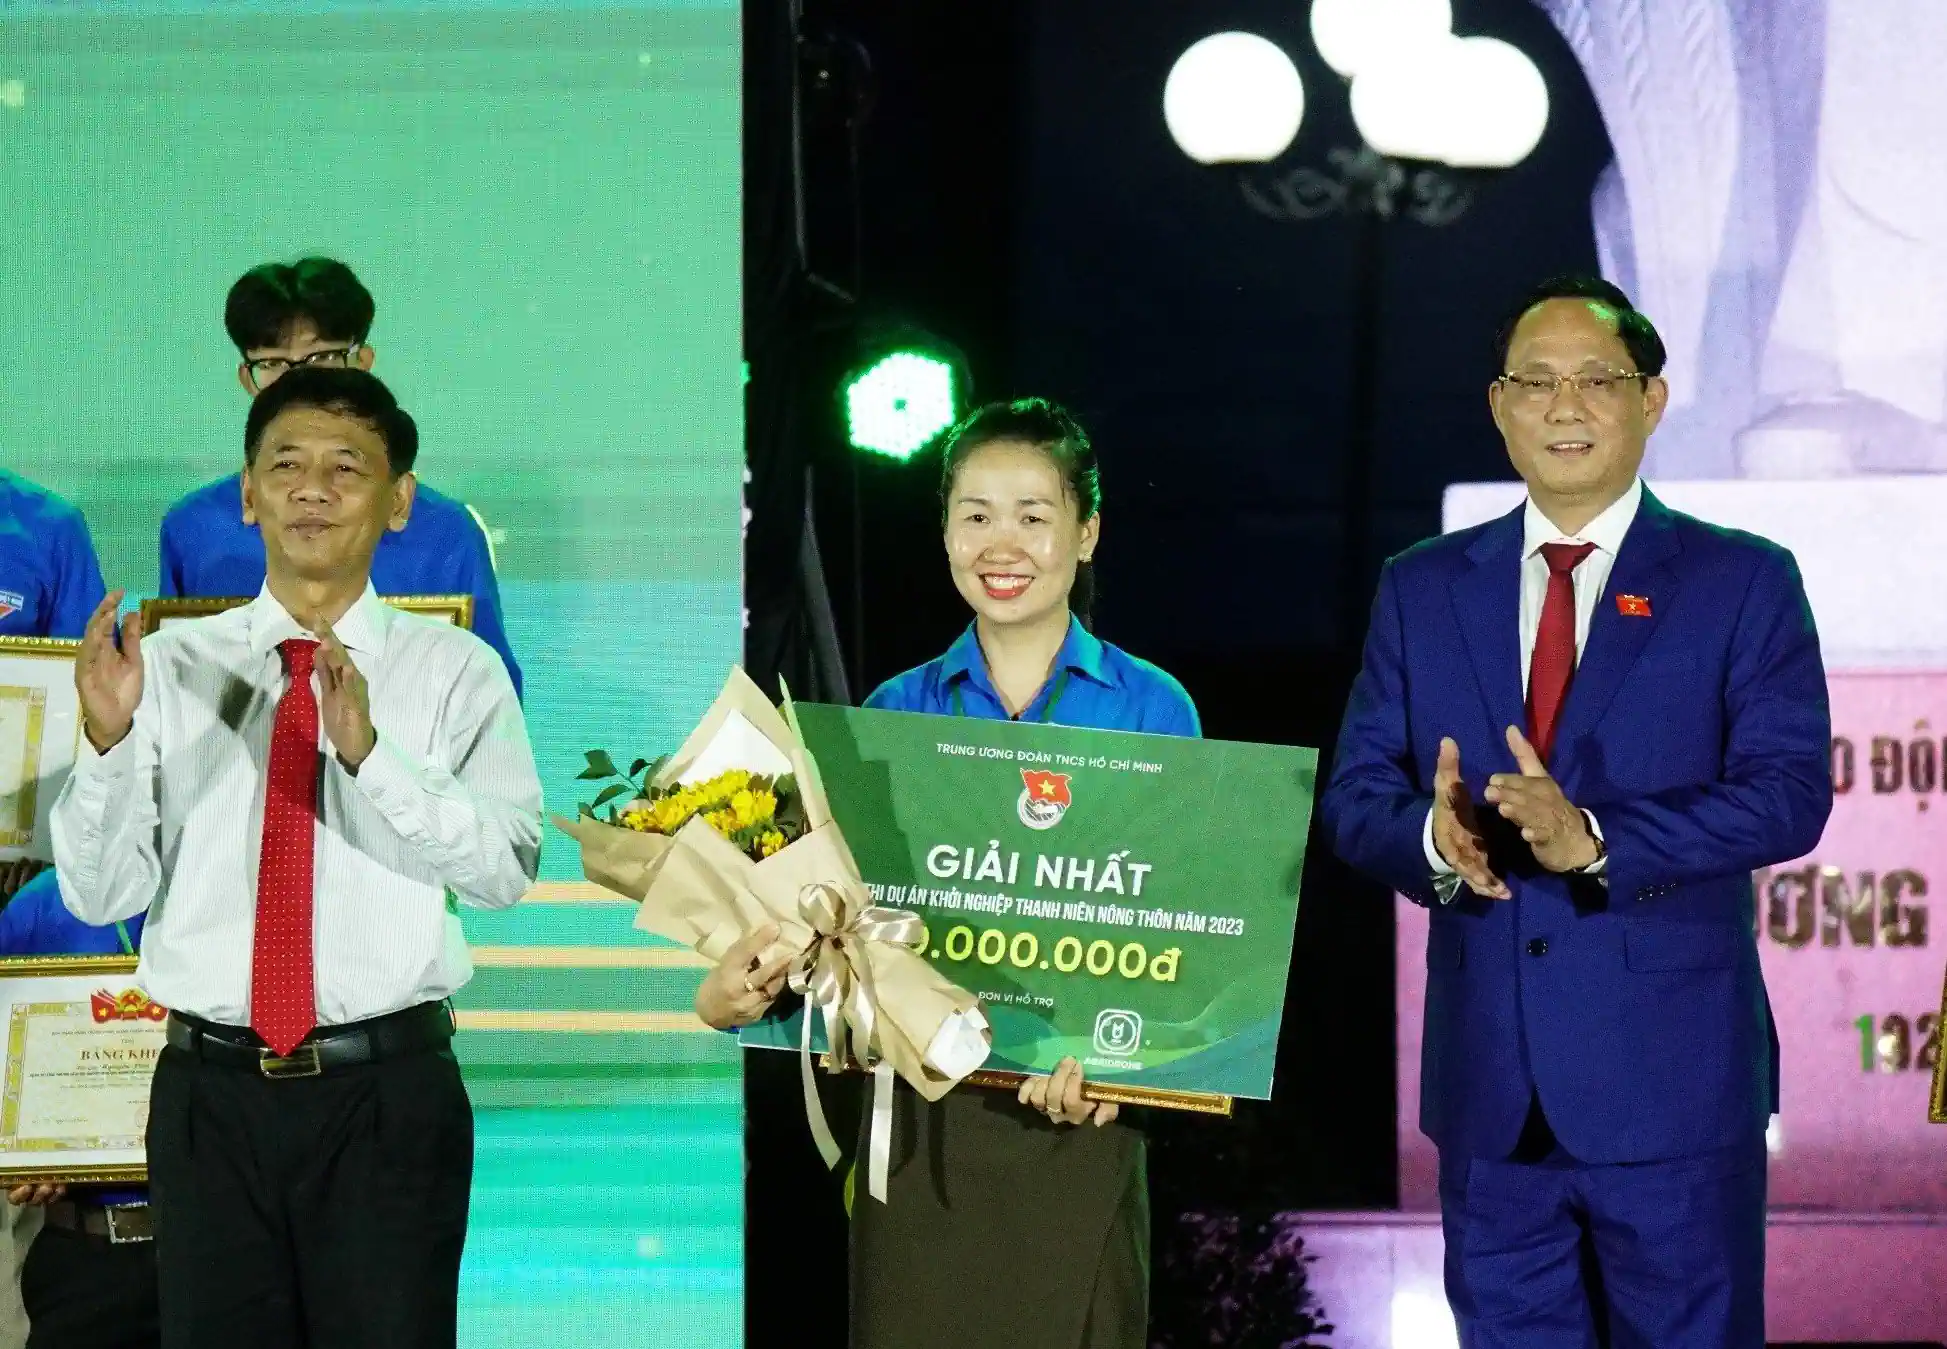 Thượng tướng Trần Quang Phương, Phó Chủ tịch Quốc hội (bên phải) và ông Lâm Văn Mẫn, Bí thư Tỉnh ủy Sóc Trăng, trao giải nhất cuộc thi Dự án khởi nghiệp thanh niên nông thôn năm 2023 cho Trần Thị Dịu, tỉnh Đắk Nông.